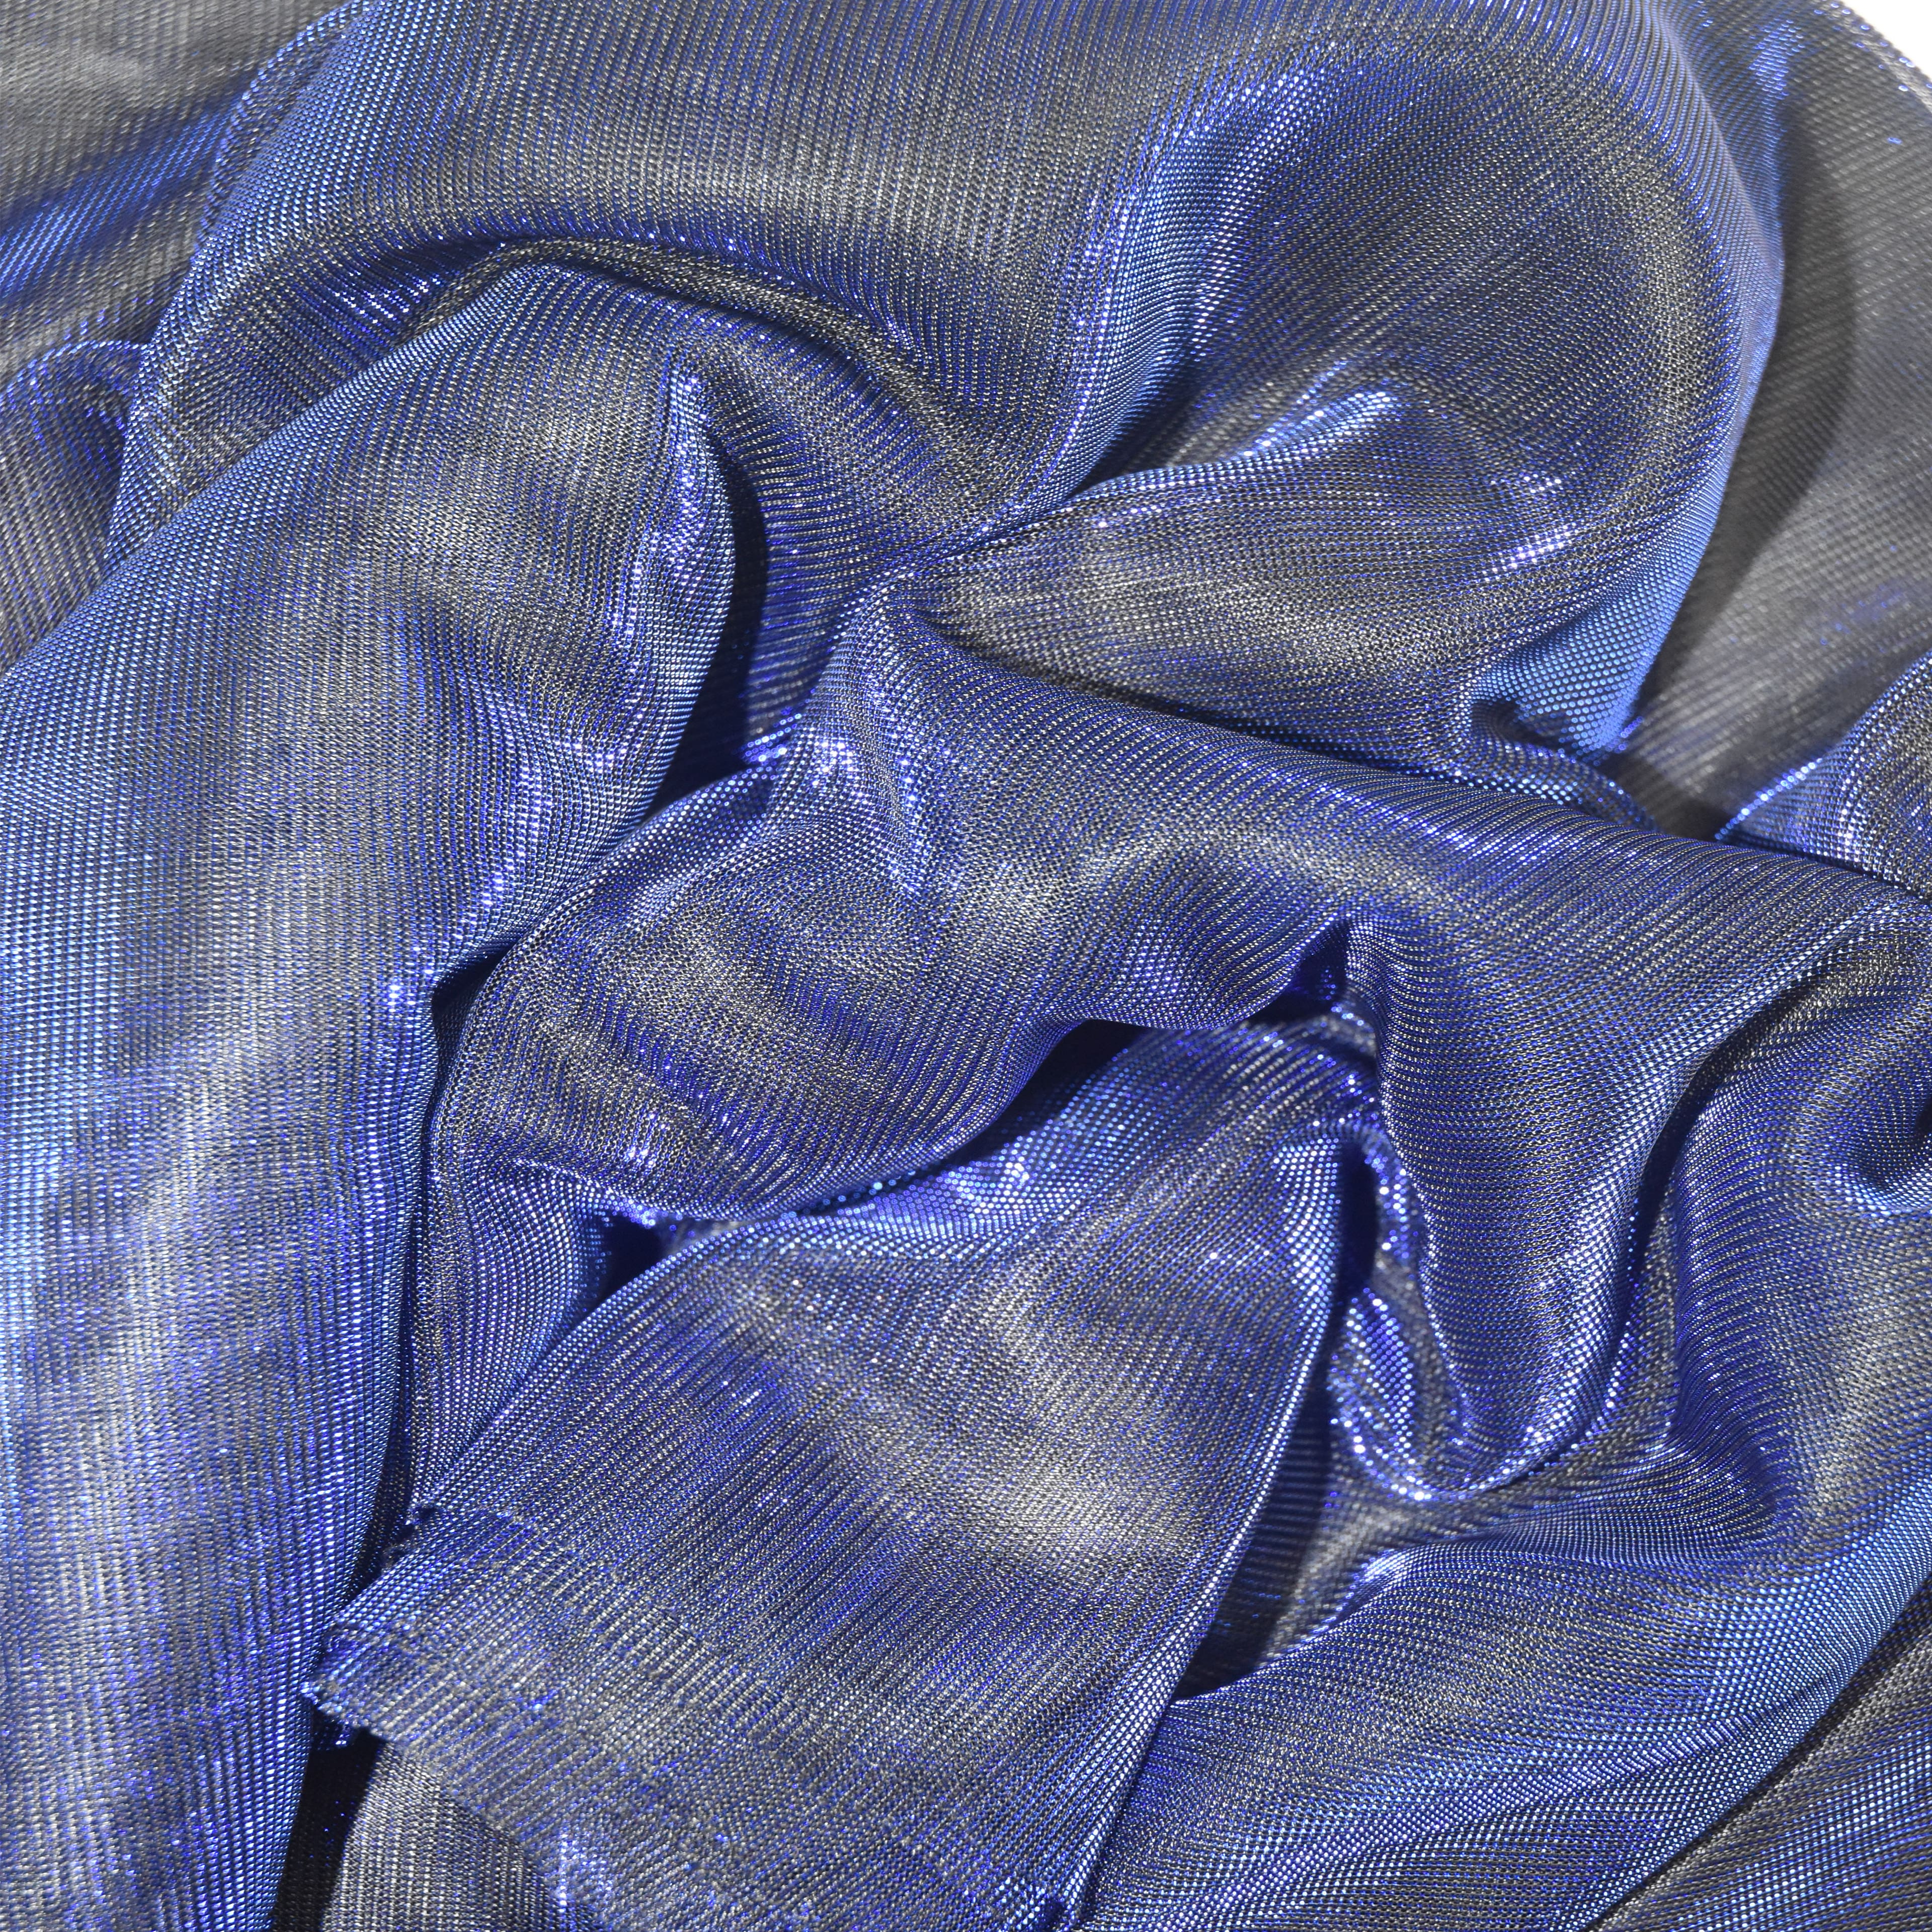 Feldman Blue Metallic Knit Fabric